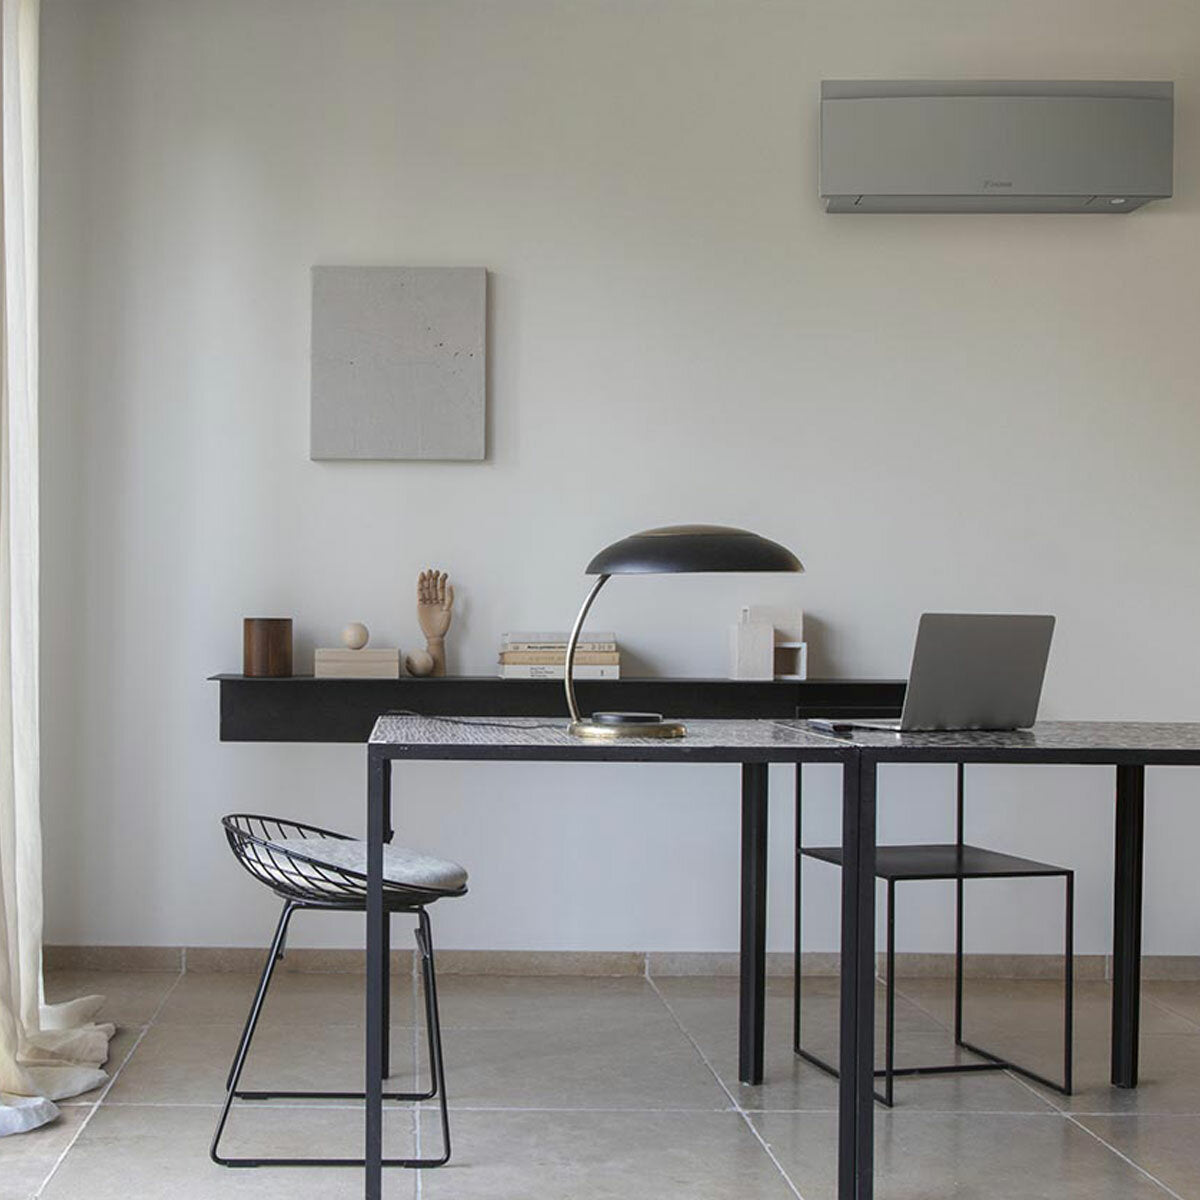 Daikin Emura 3 trial split air conditioner 7000+7000+15000 BTU inverter A++ wifi outdoor unit 5 kW Silver